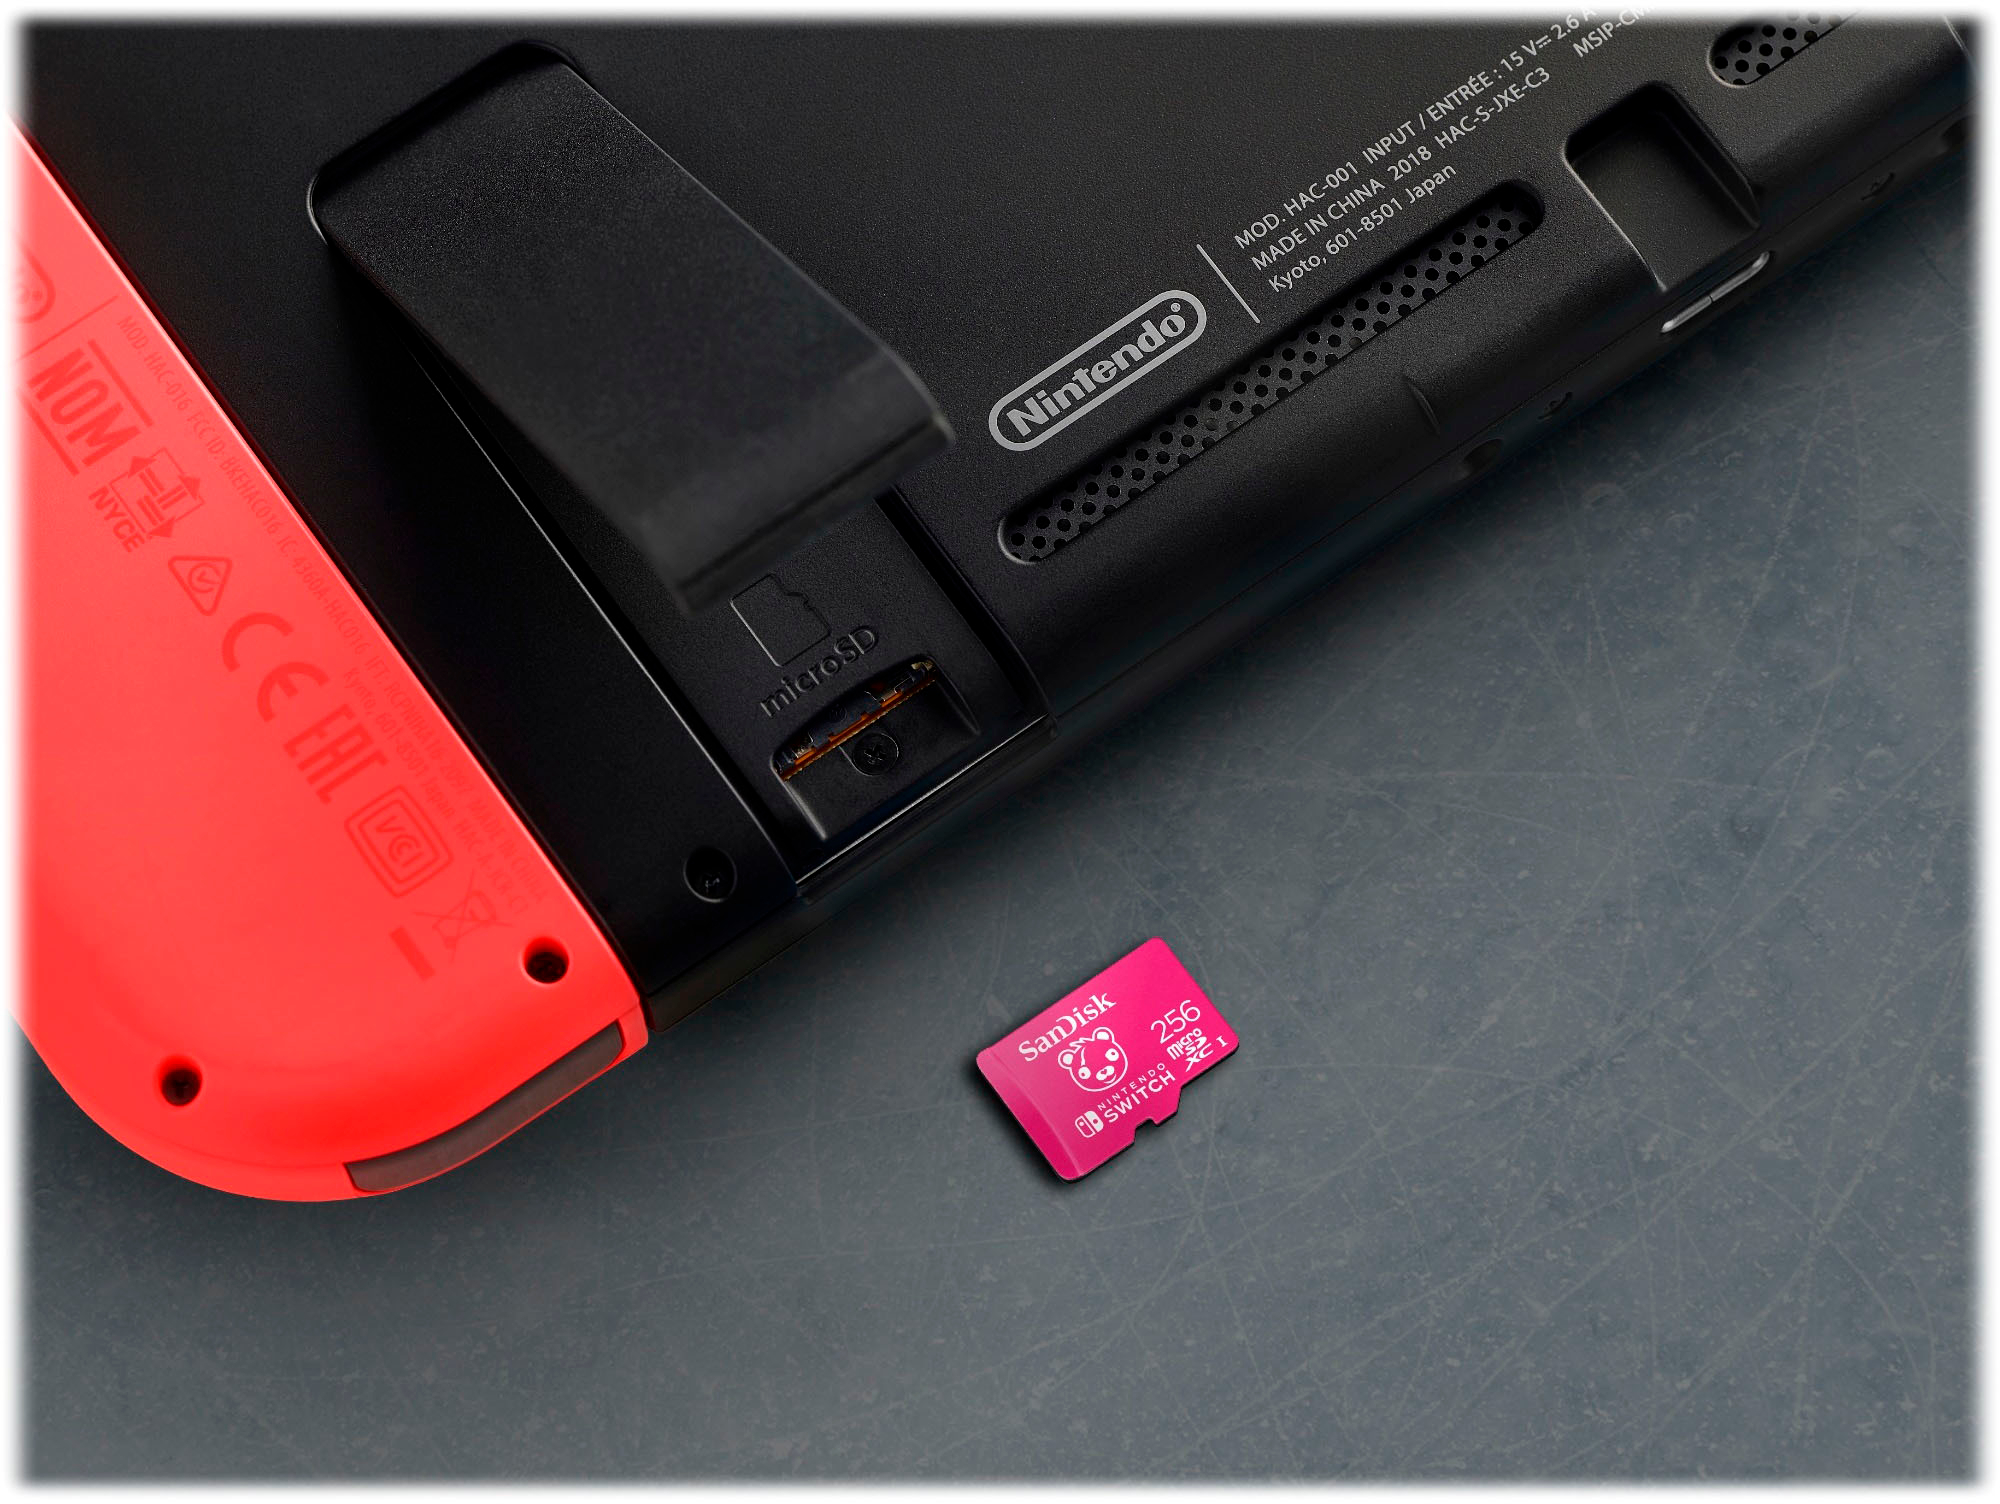 SanDisk 256GB Fortnite microSDXC Tarjeta para Nintendo Switch, Tarjeta de  memoria con licencia de Nintendo